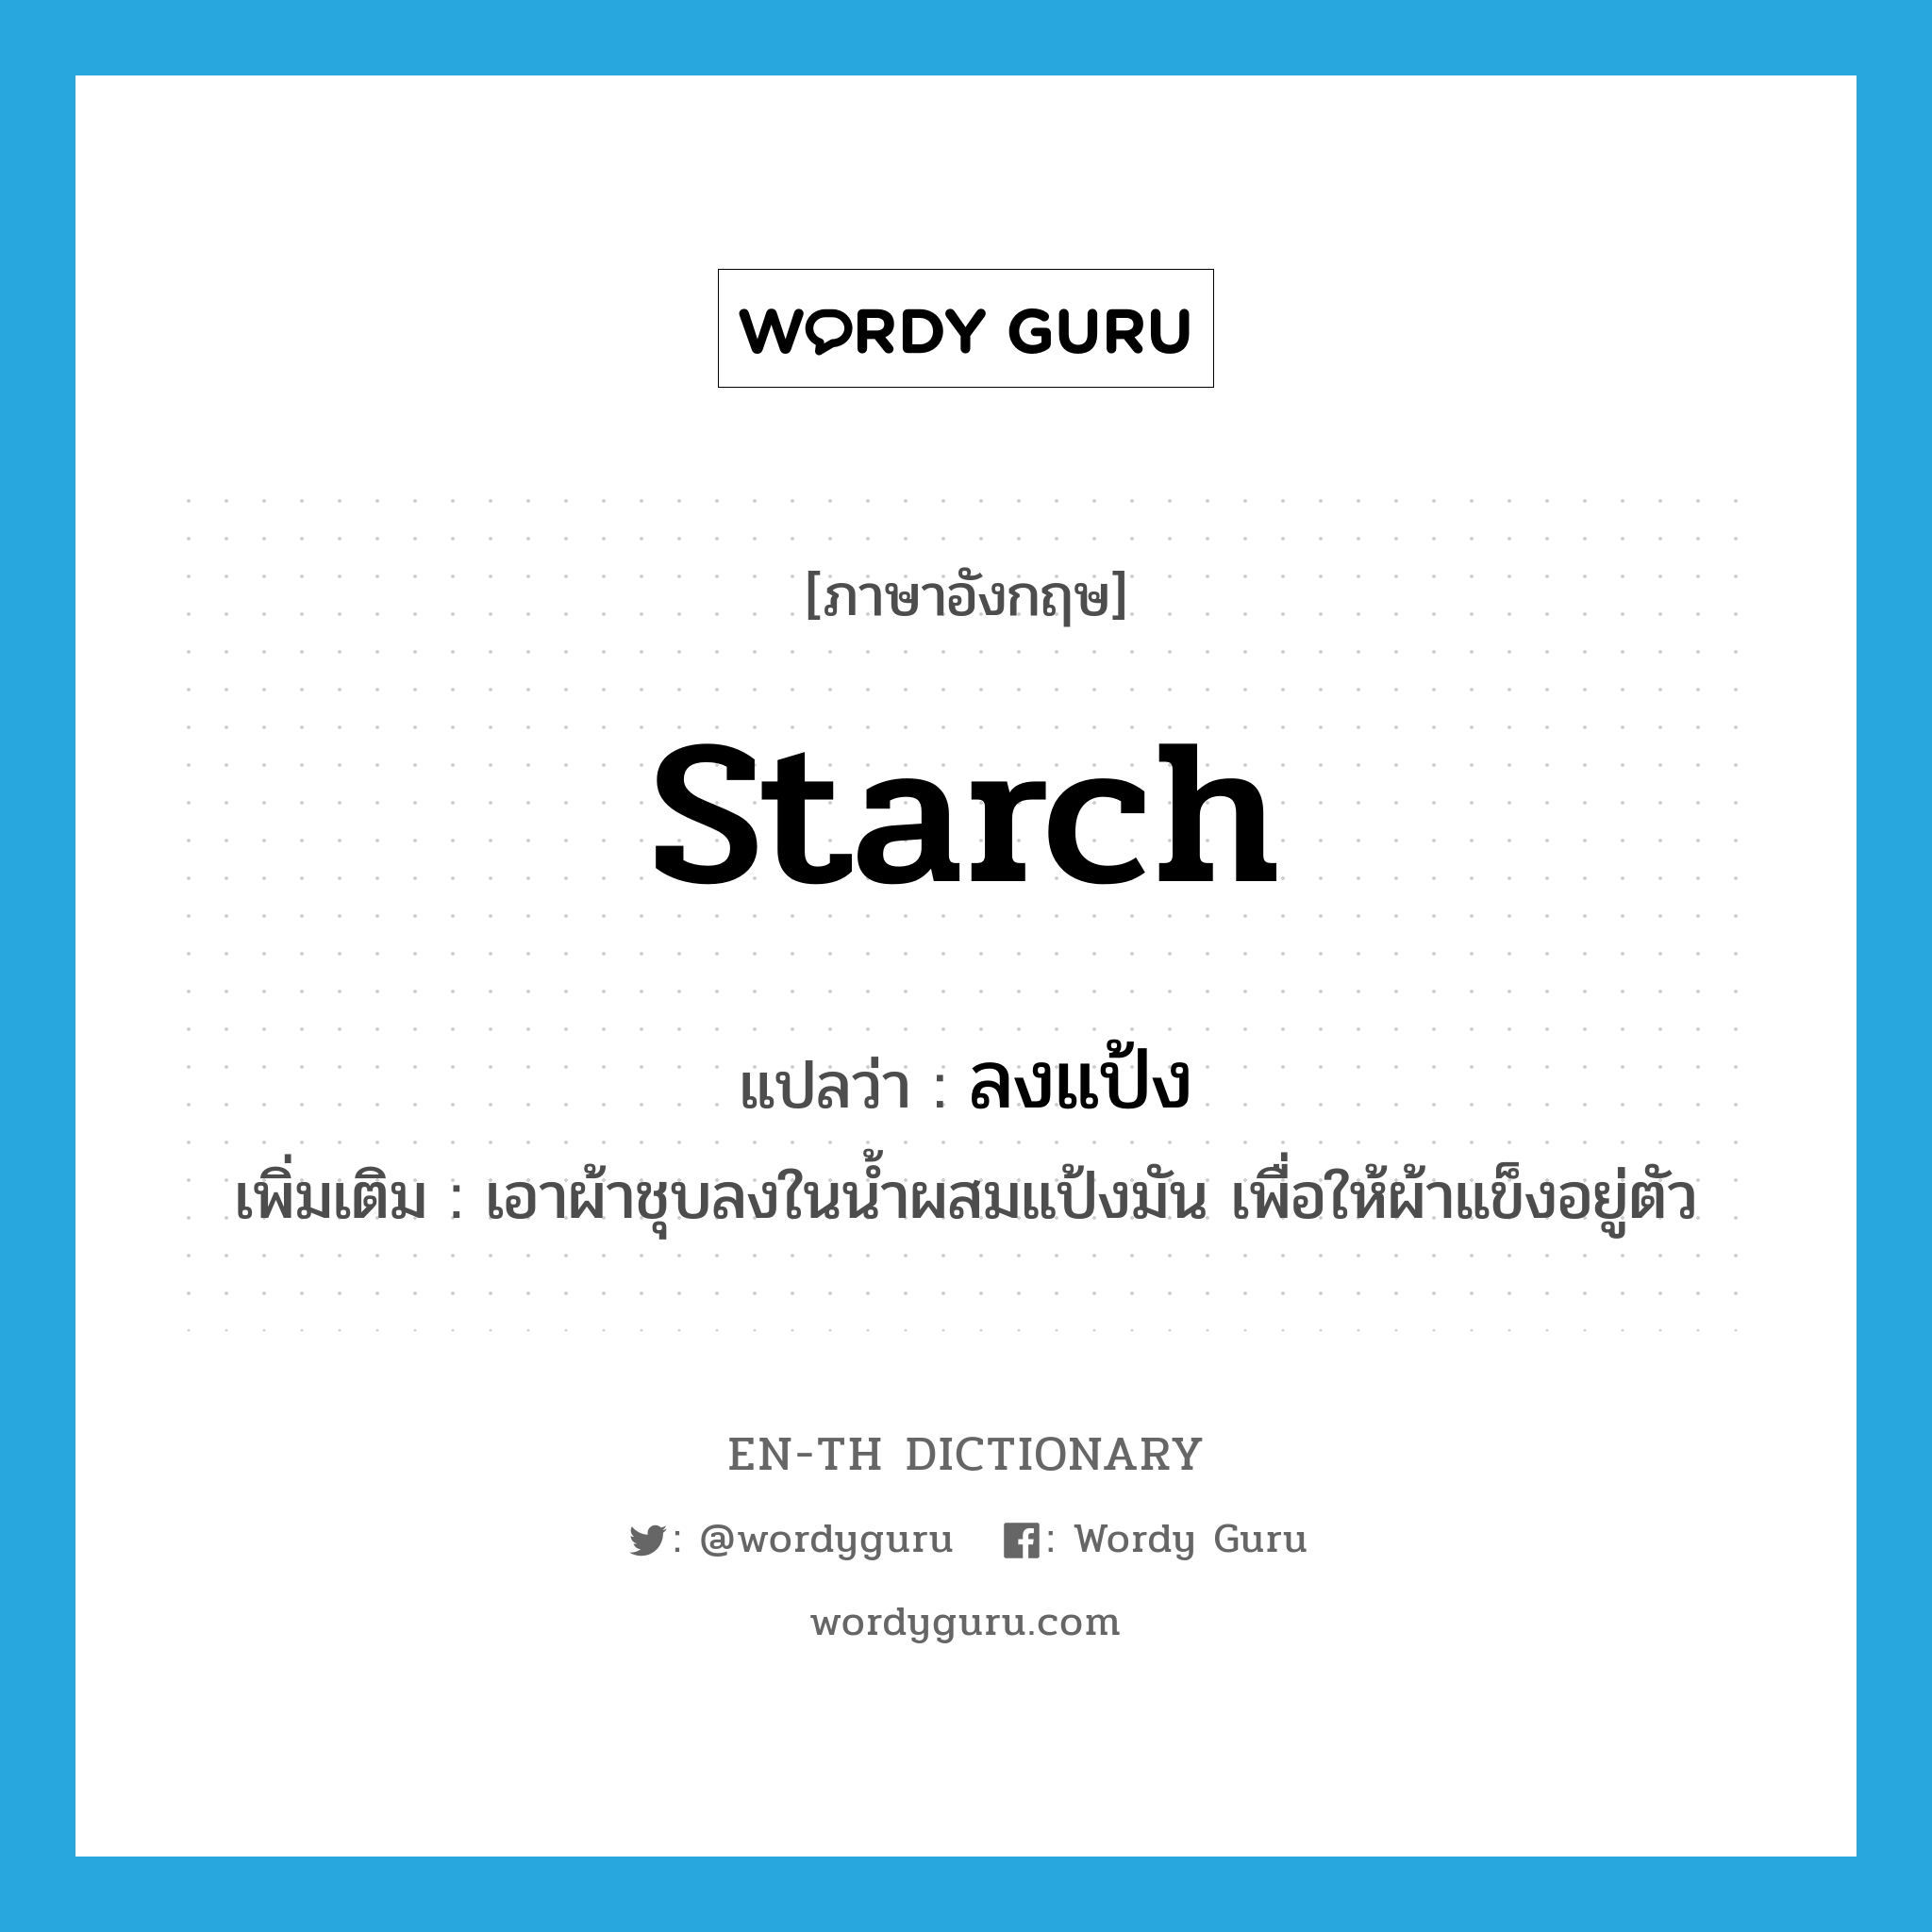 starch แปลว่า?, คำศัพท์ภาษาอังกฤษ starch แปลว่า ลงแป้ง ประเภท V เพิ่มเติม เอาผ้าชุบลงในน้ำผสมแป้งมัน เพื่อให้ผ้าแข็งอยู่ตัว หมวด V